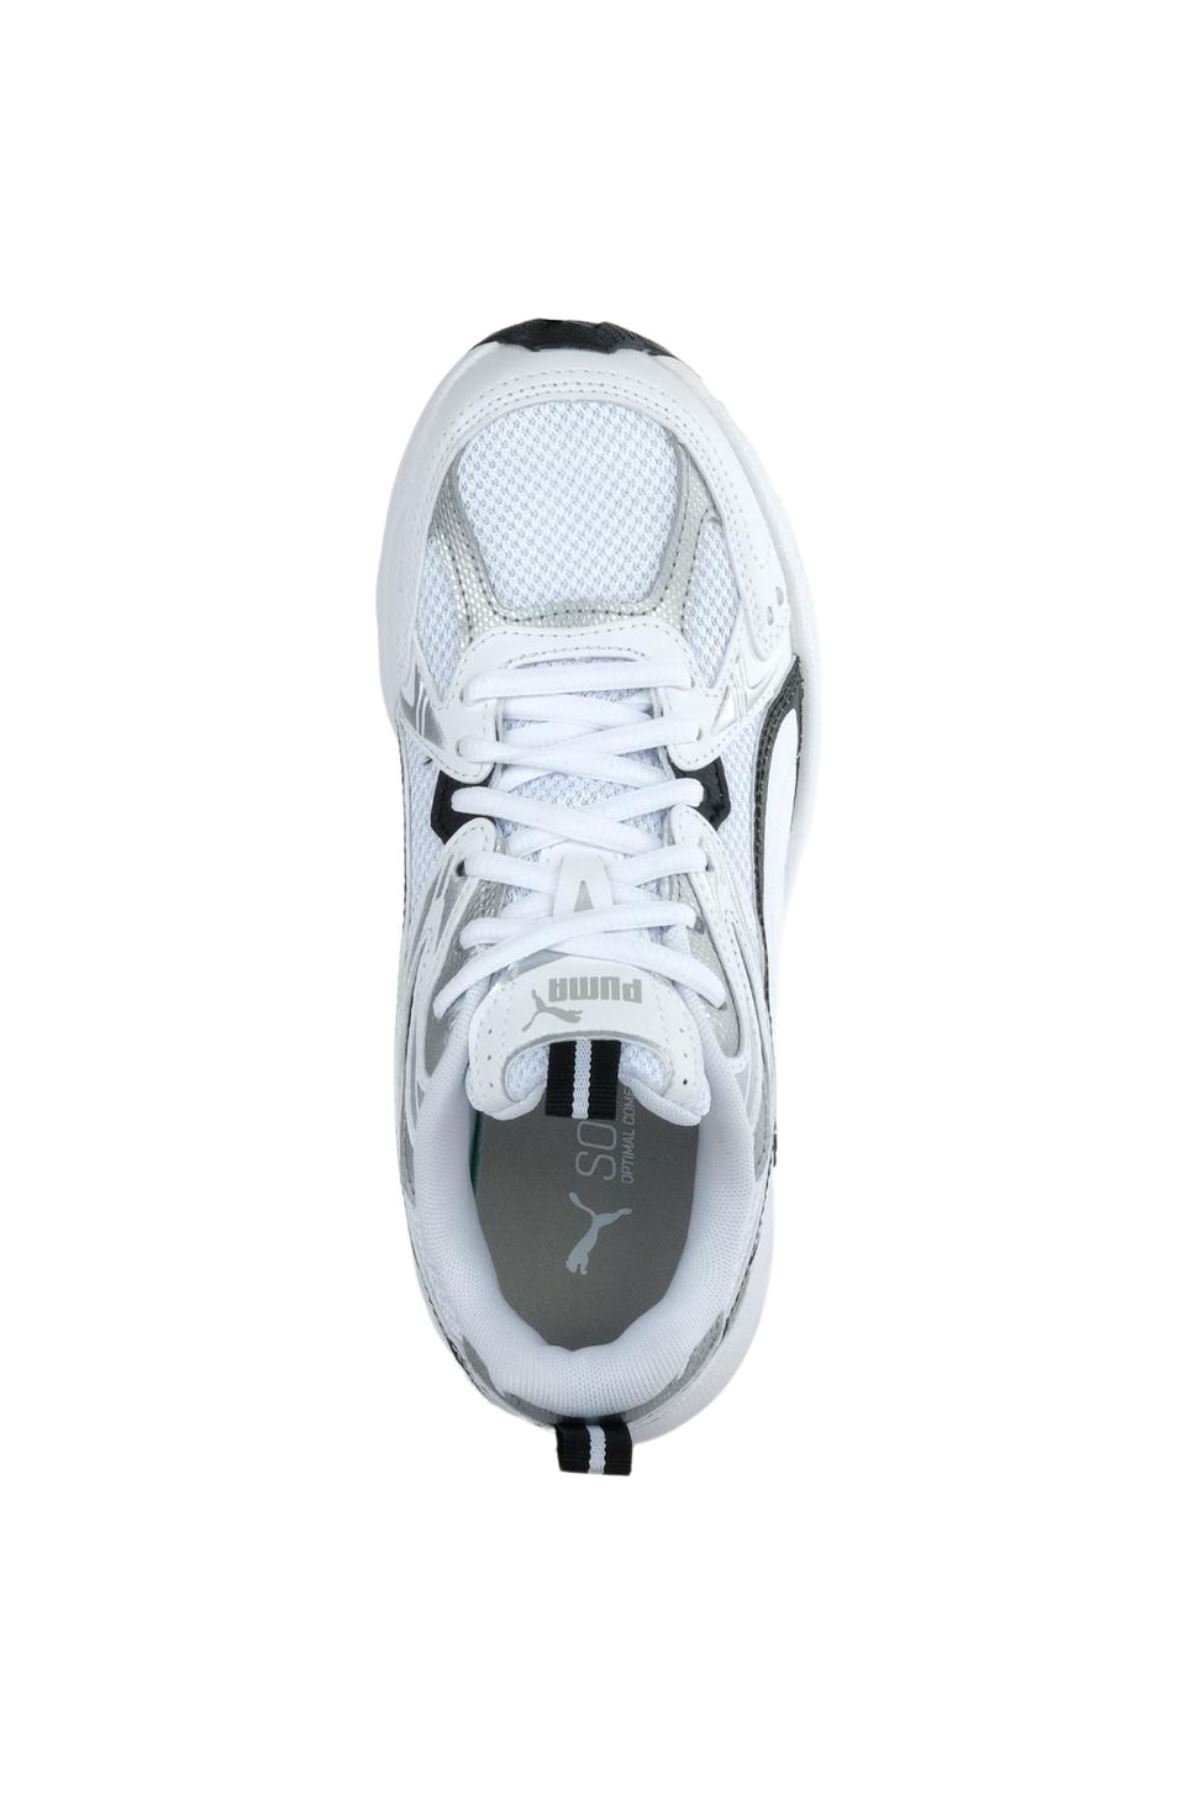 Puma Milenio Tech Erkek Beyaz Spor Ayakkabı - 392322-01